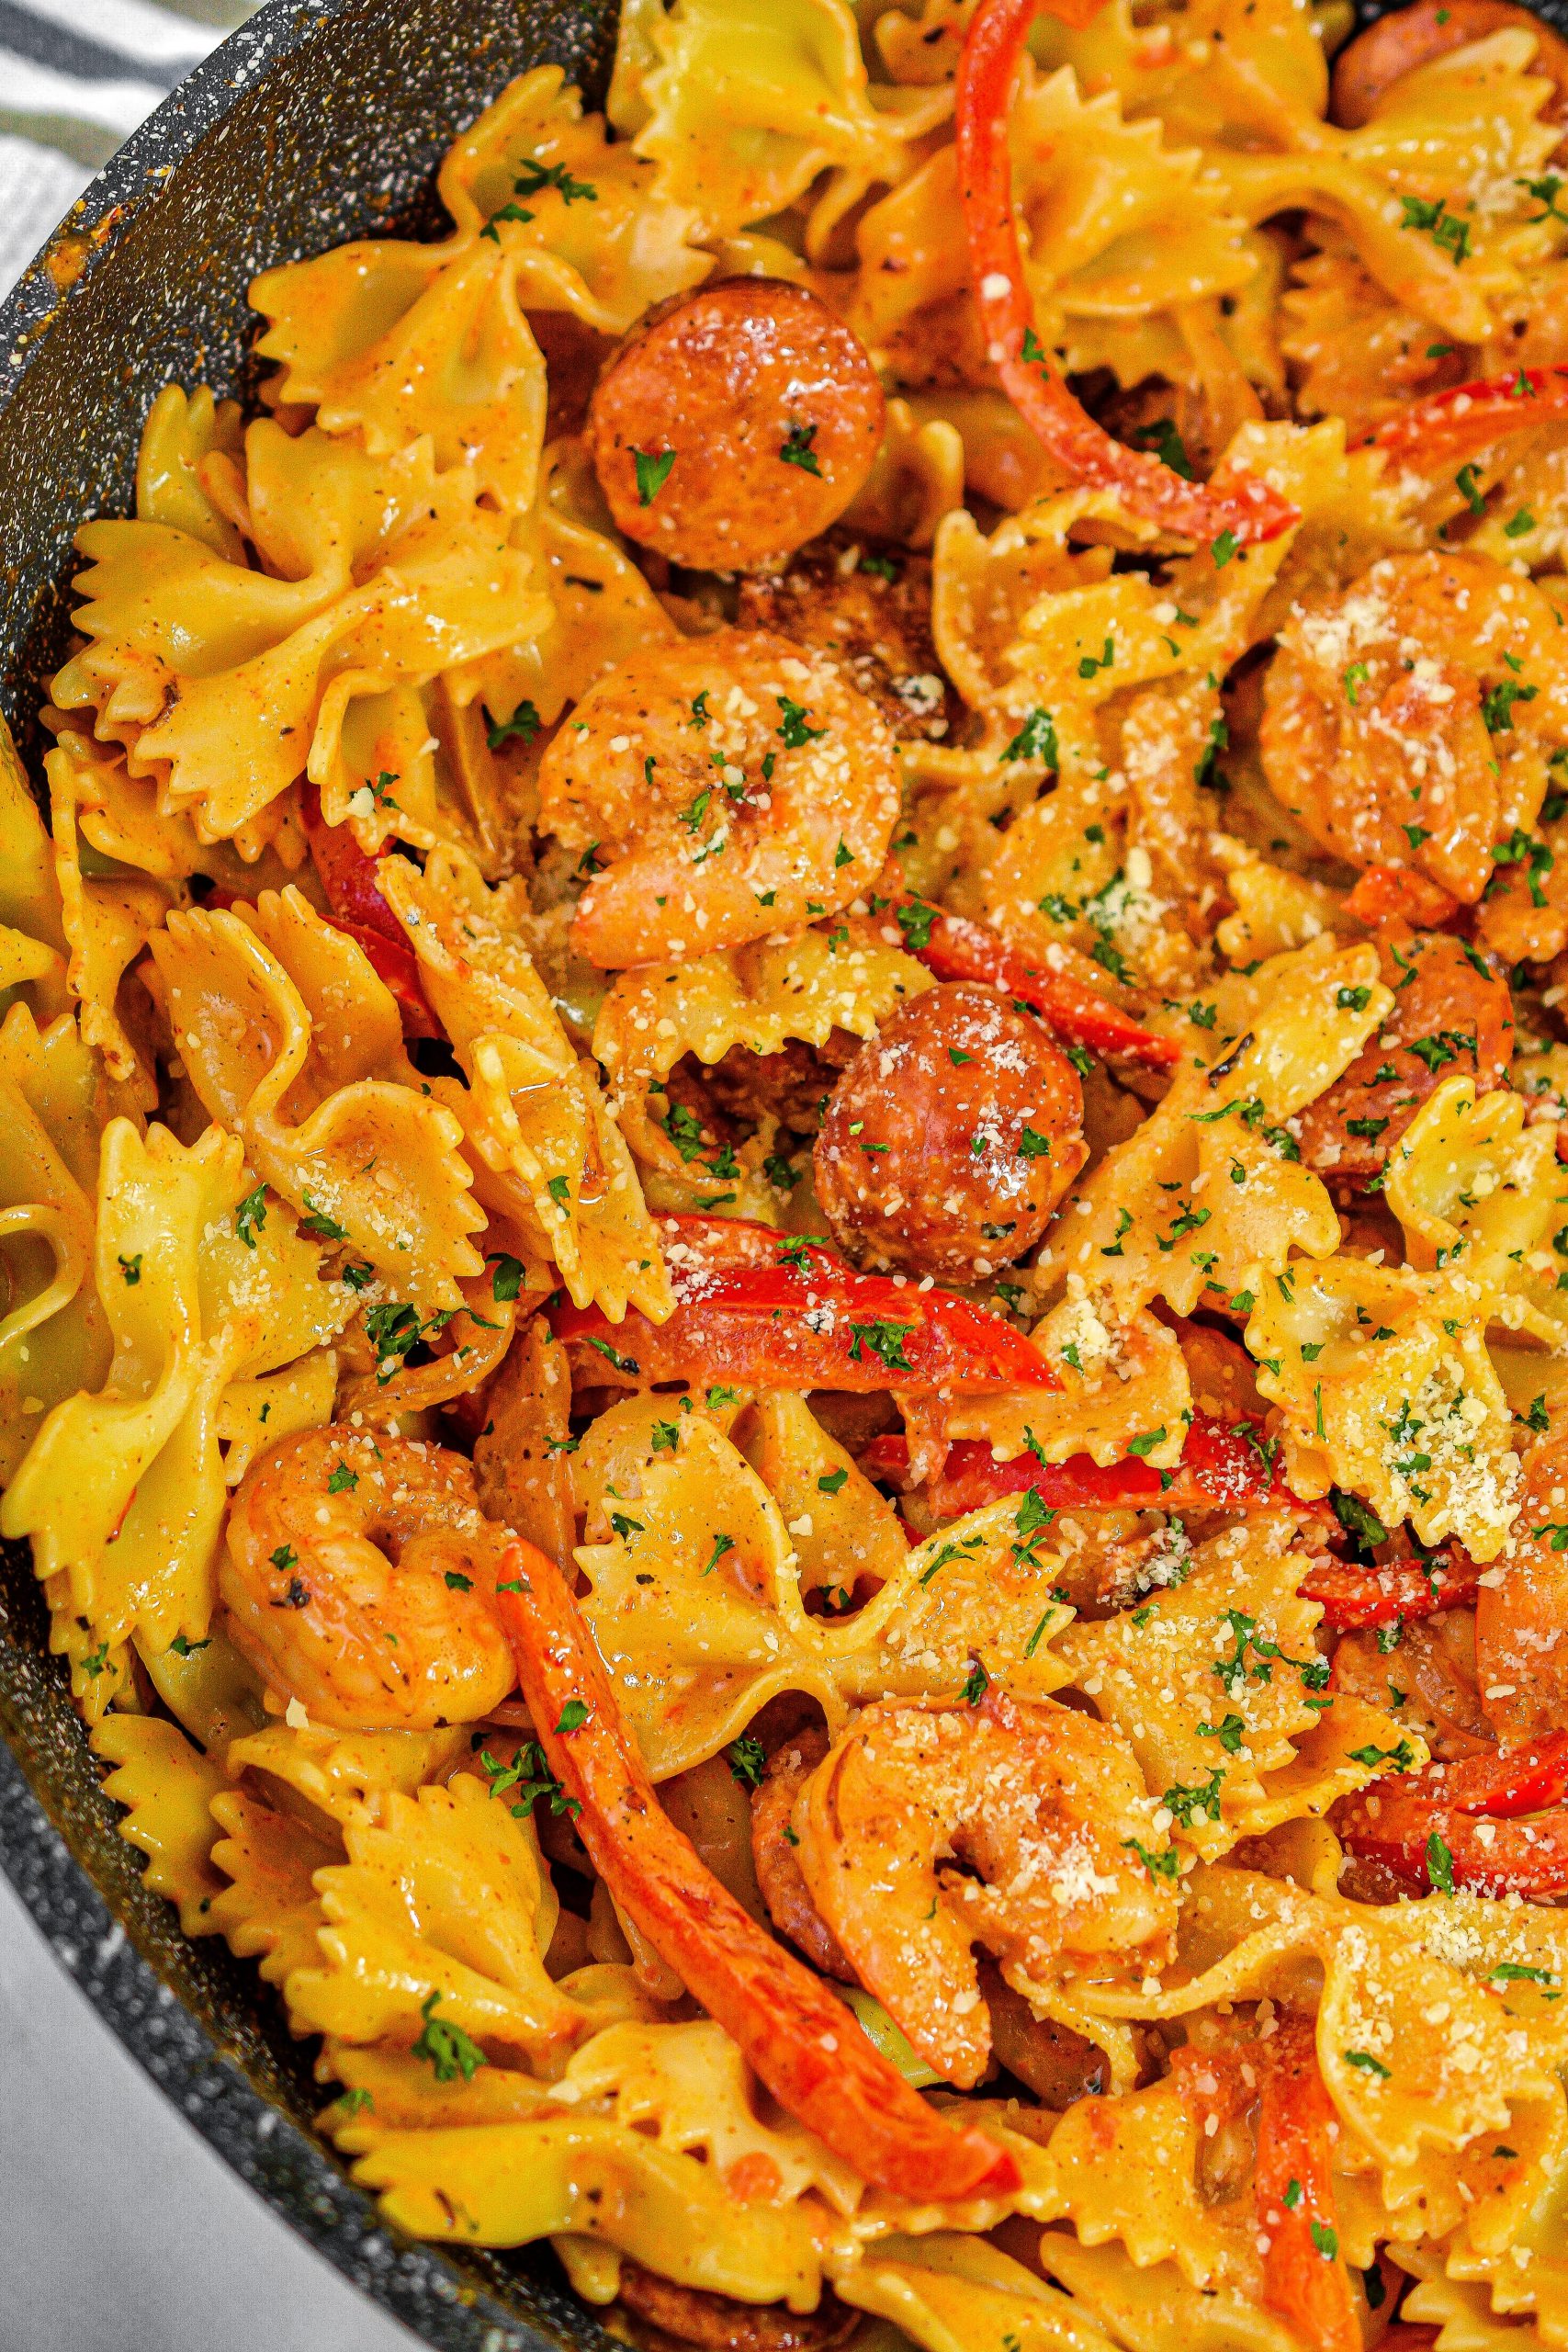 cajun shrimp pasta with sausage, cajun shrimp pasta, shrimp and sausage pasta